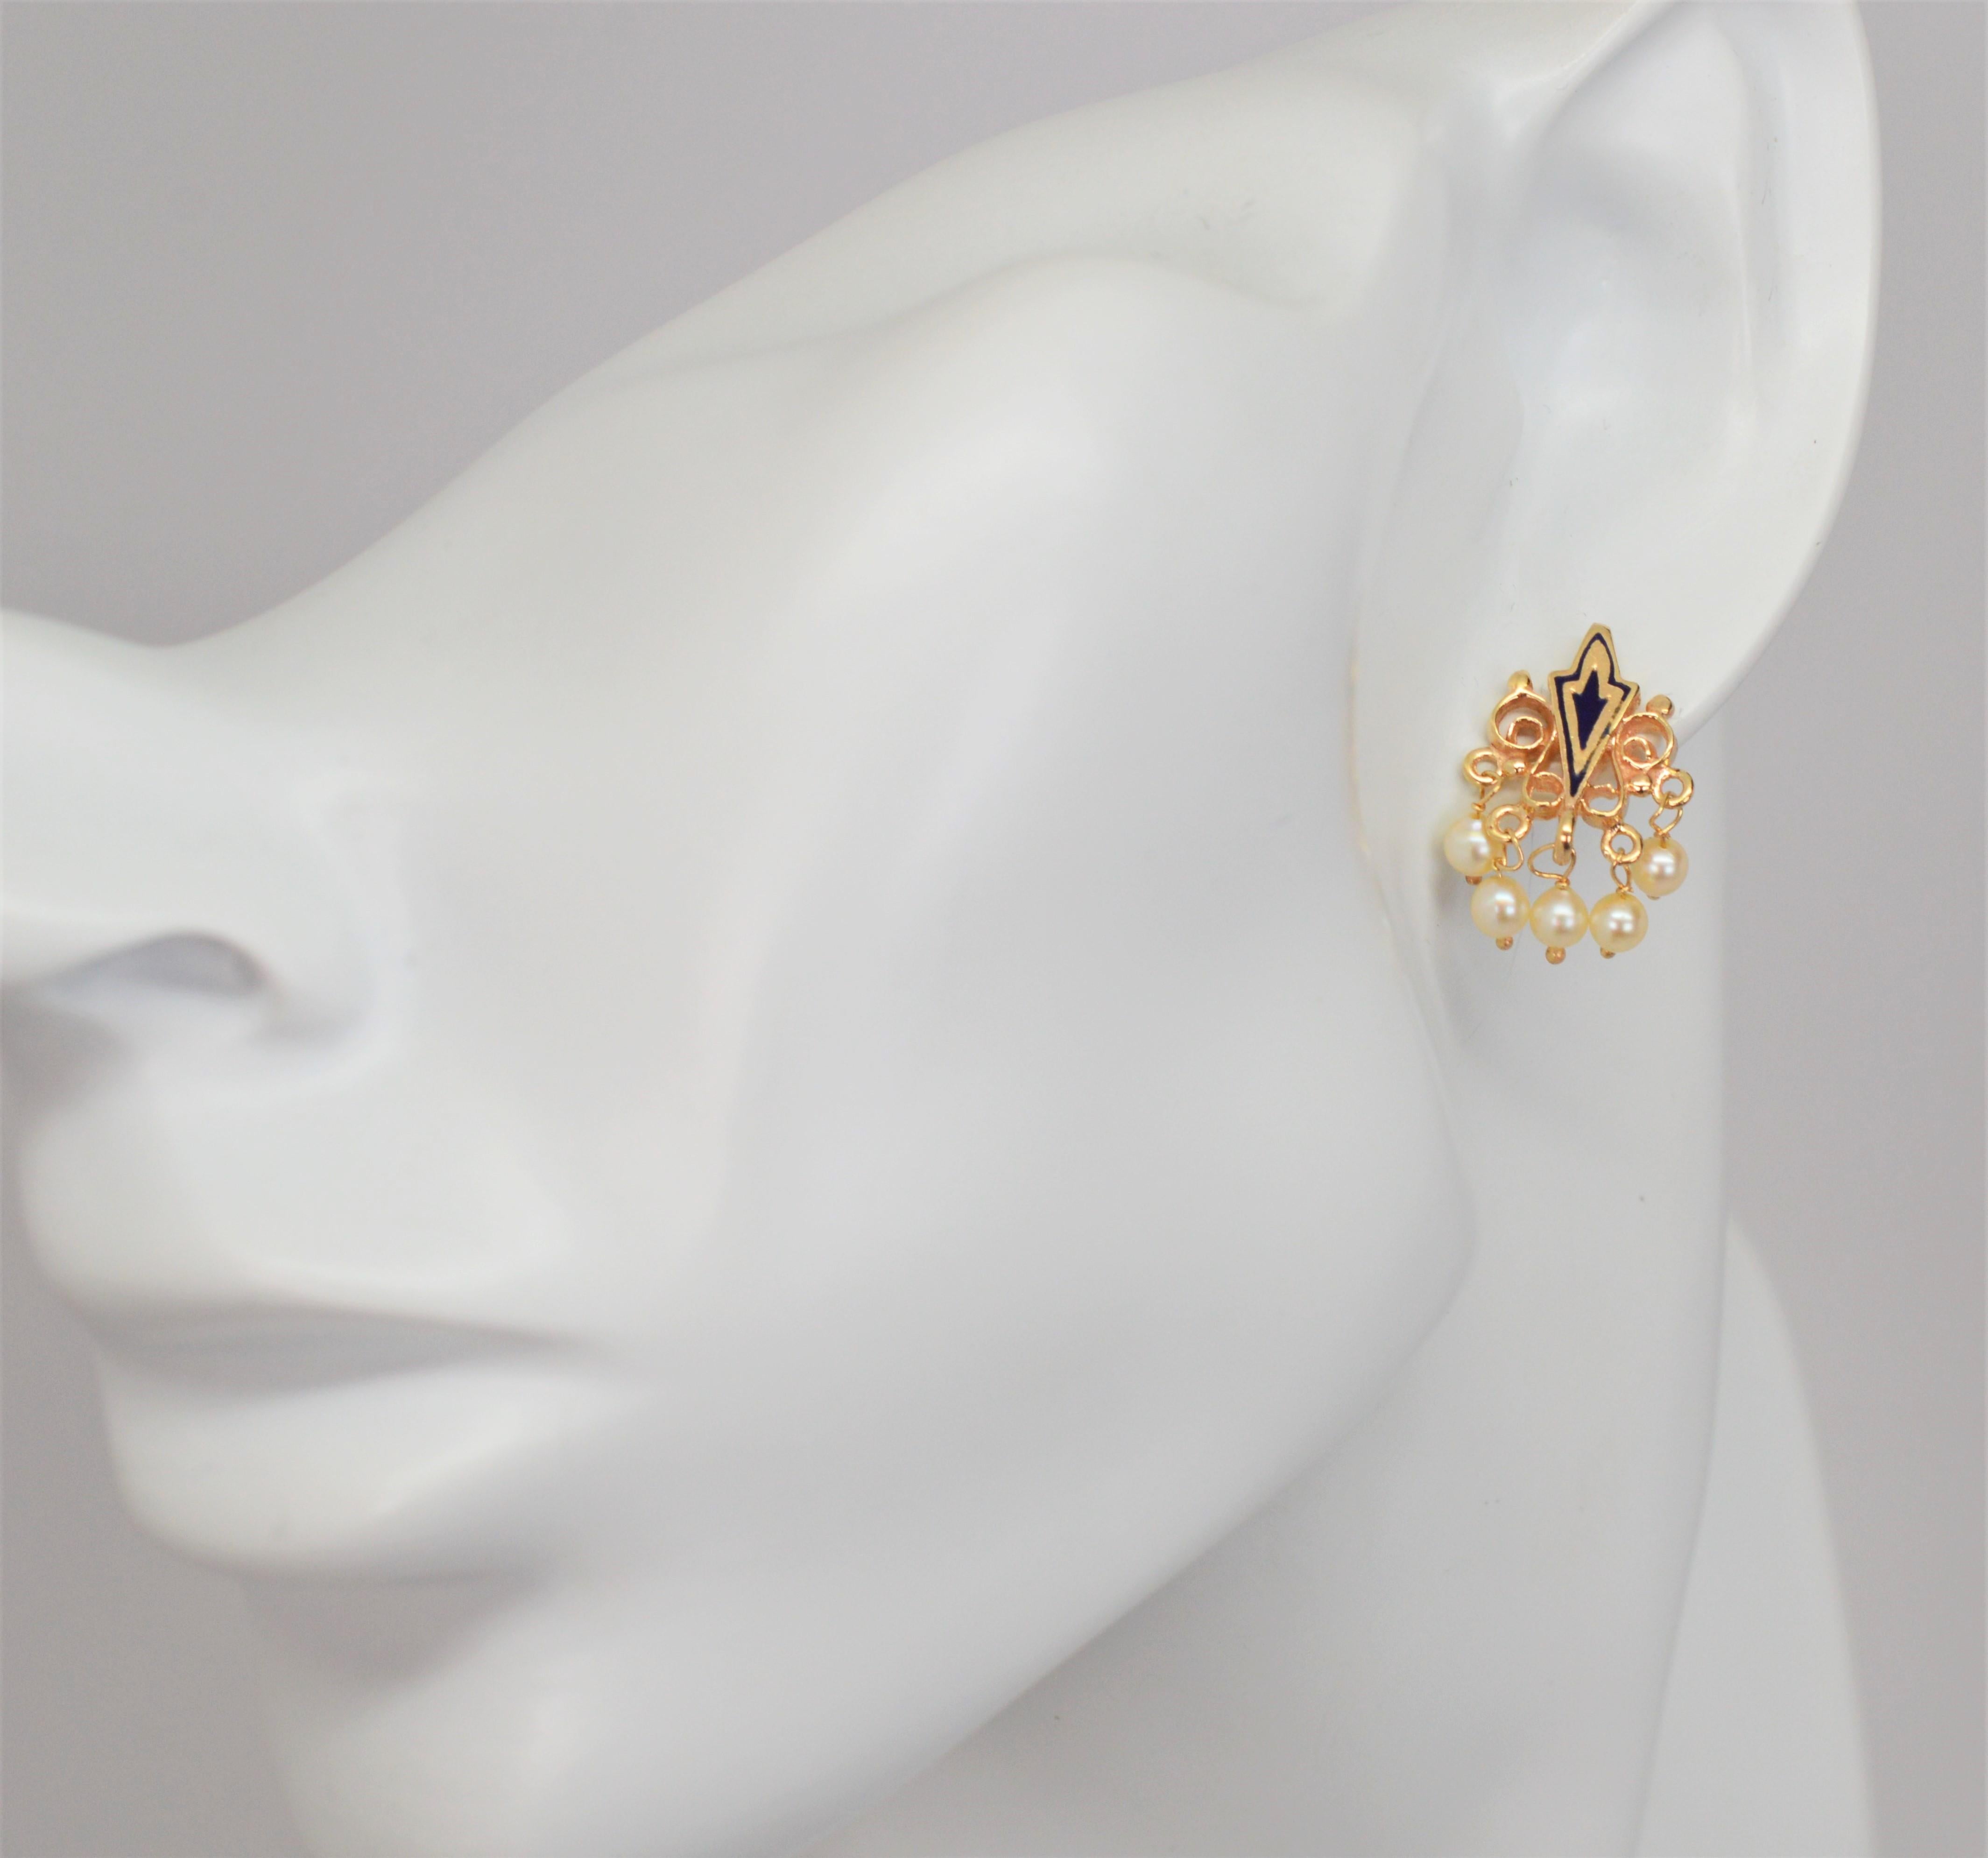 Dieses zierliche Paar Ohrringe aus 10-karätigem Gelbgold im antiken Stil ist mit gemalten, marquiseförmigen Schilden aus Emaille und durchbrochenem Goldfiligran verziert, von dem winzige Perlentropfen baumeln. Das Maß ist ungefähr 5/8/ Zoll. Das